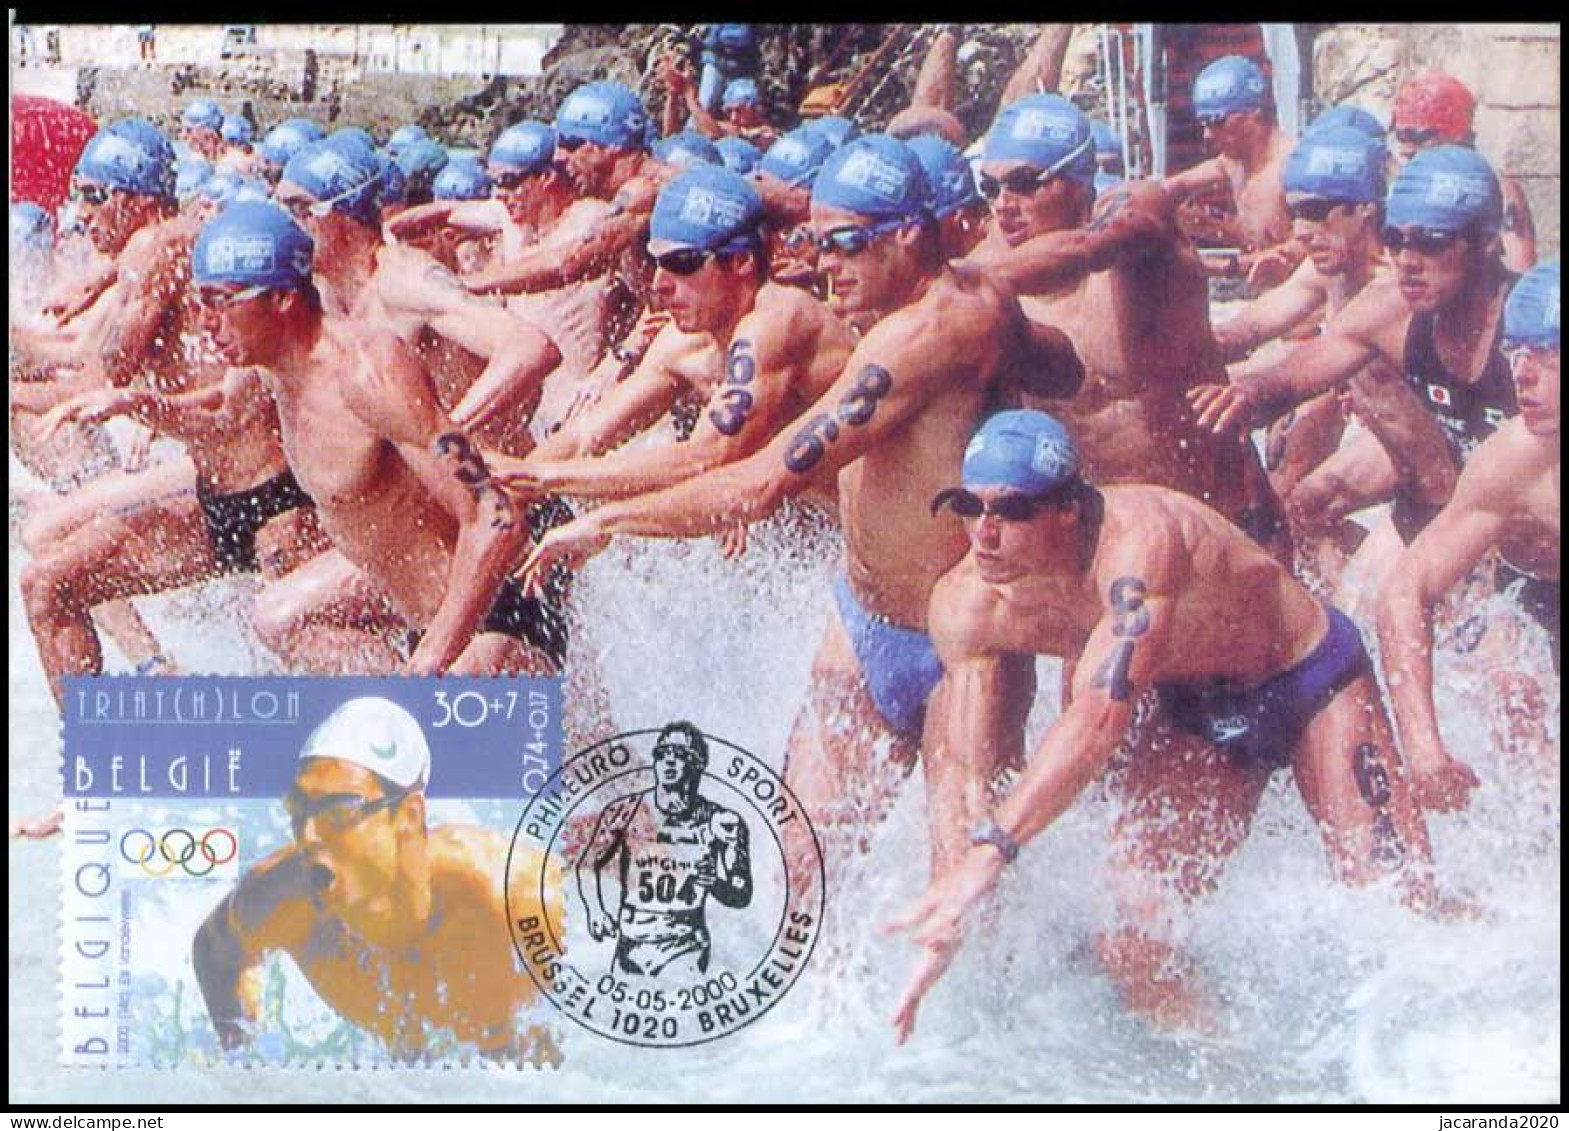 2911 - MK - Olympische Spelen Sydney 2000 - 1991-2000